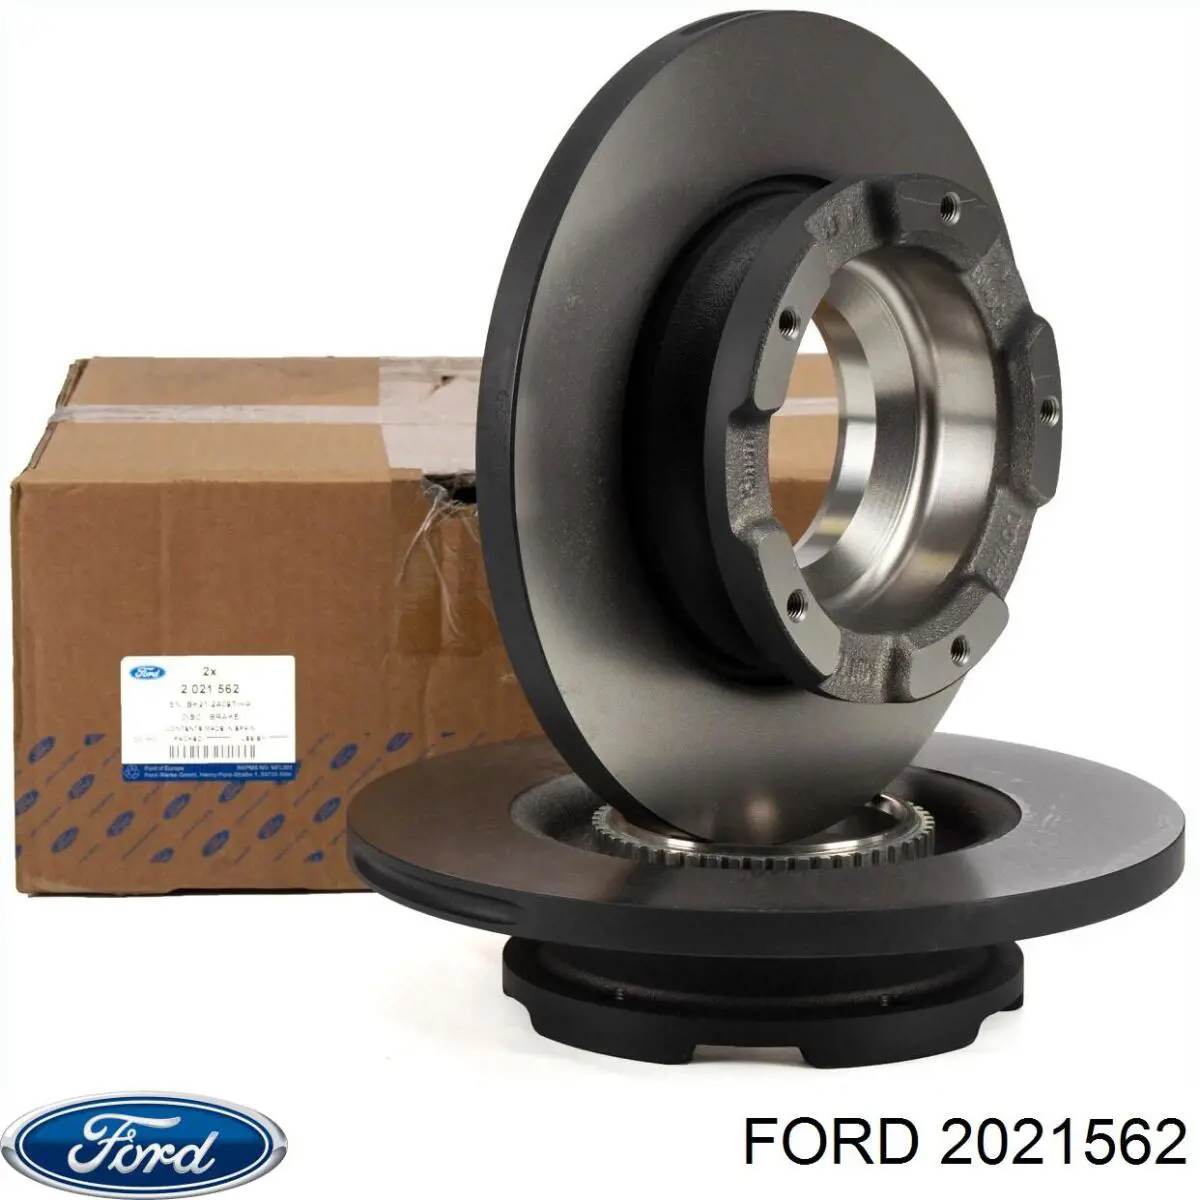 2021562 Ford диск тормозной задний